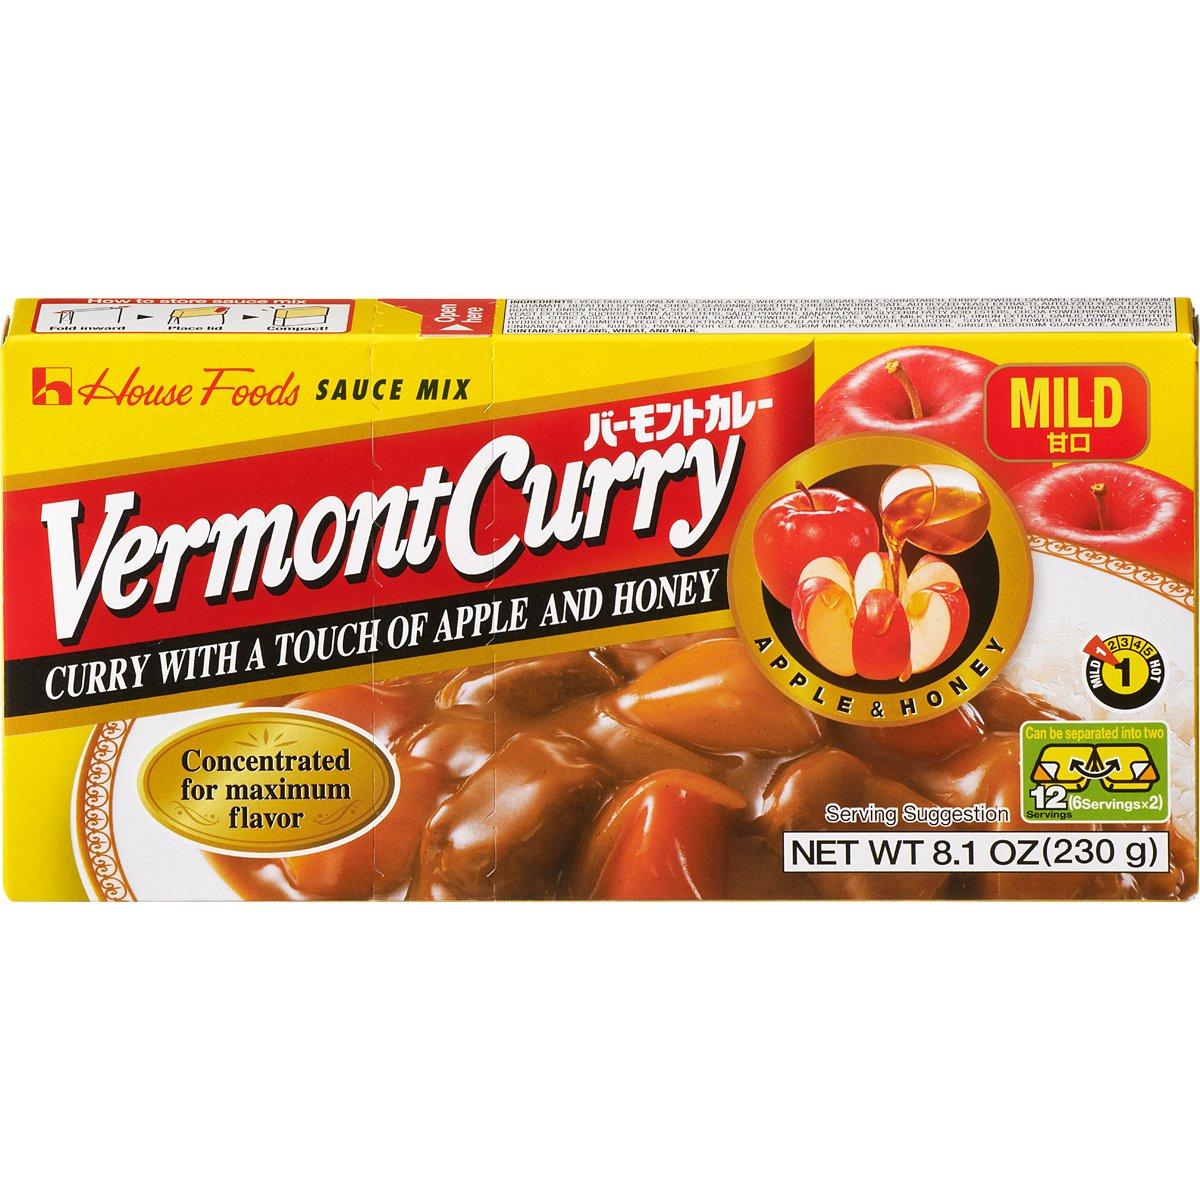 Vermont Curry เครื่องแกงกะหรี่ ชนิด เผ็ดน้อย สำหรับ 12 ที่ ขนาด 230 กรัม จำนวน 1 กล่อง